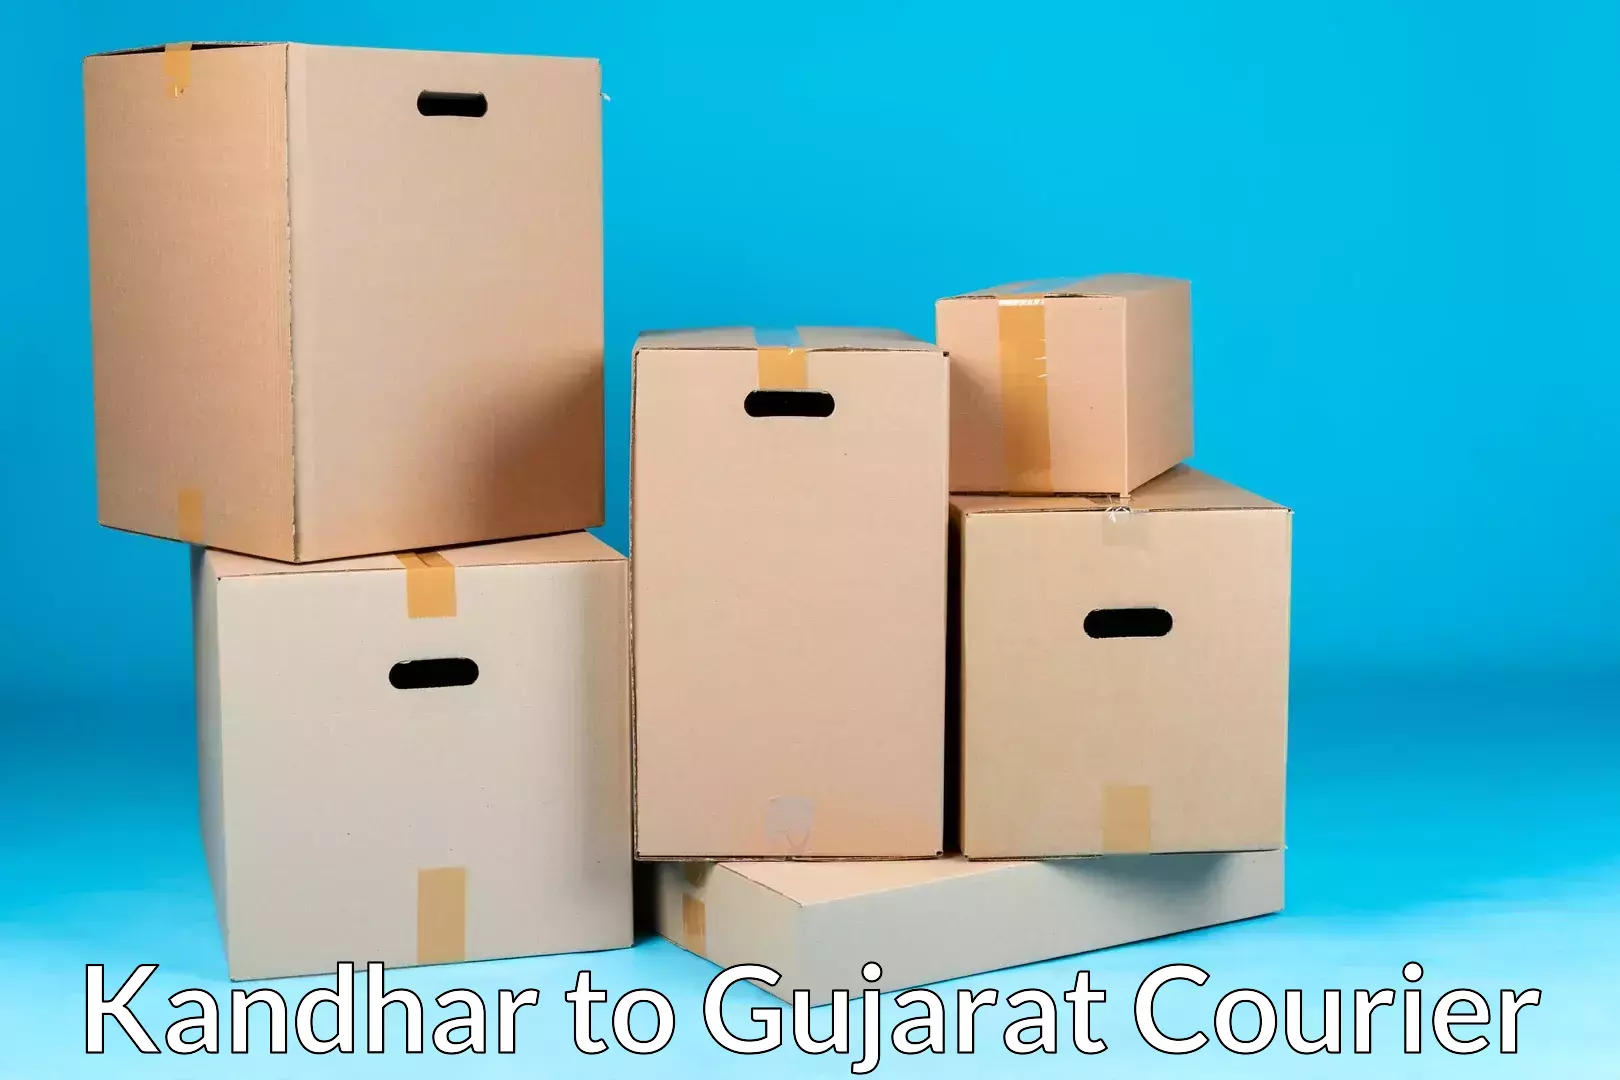 Furniture moving service in Kandhar to IIIT Surat